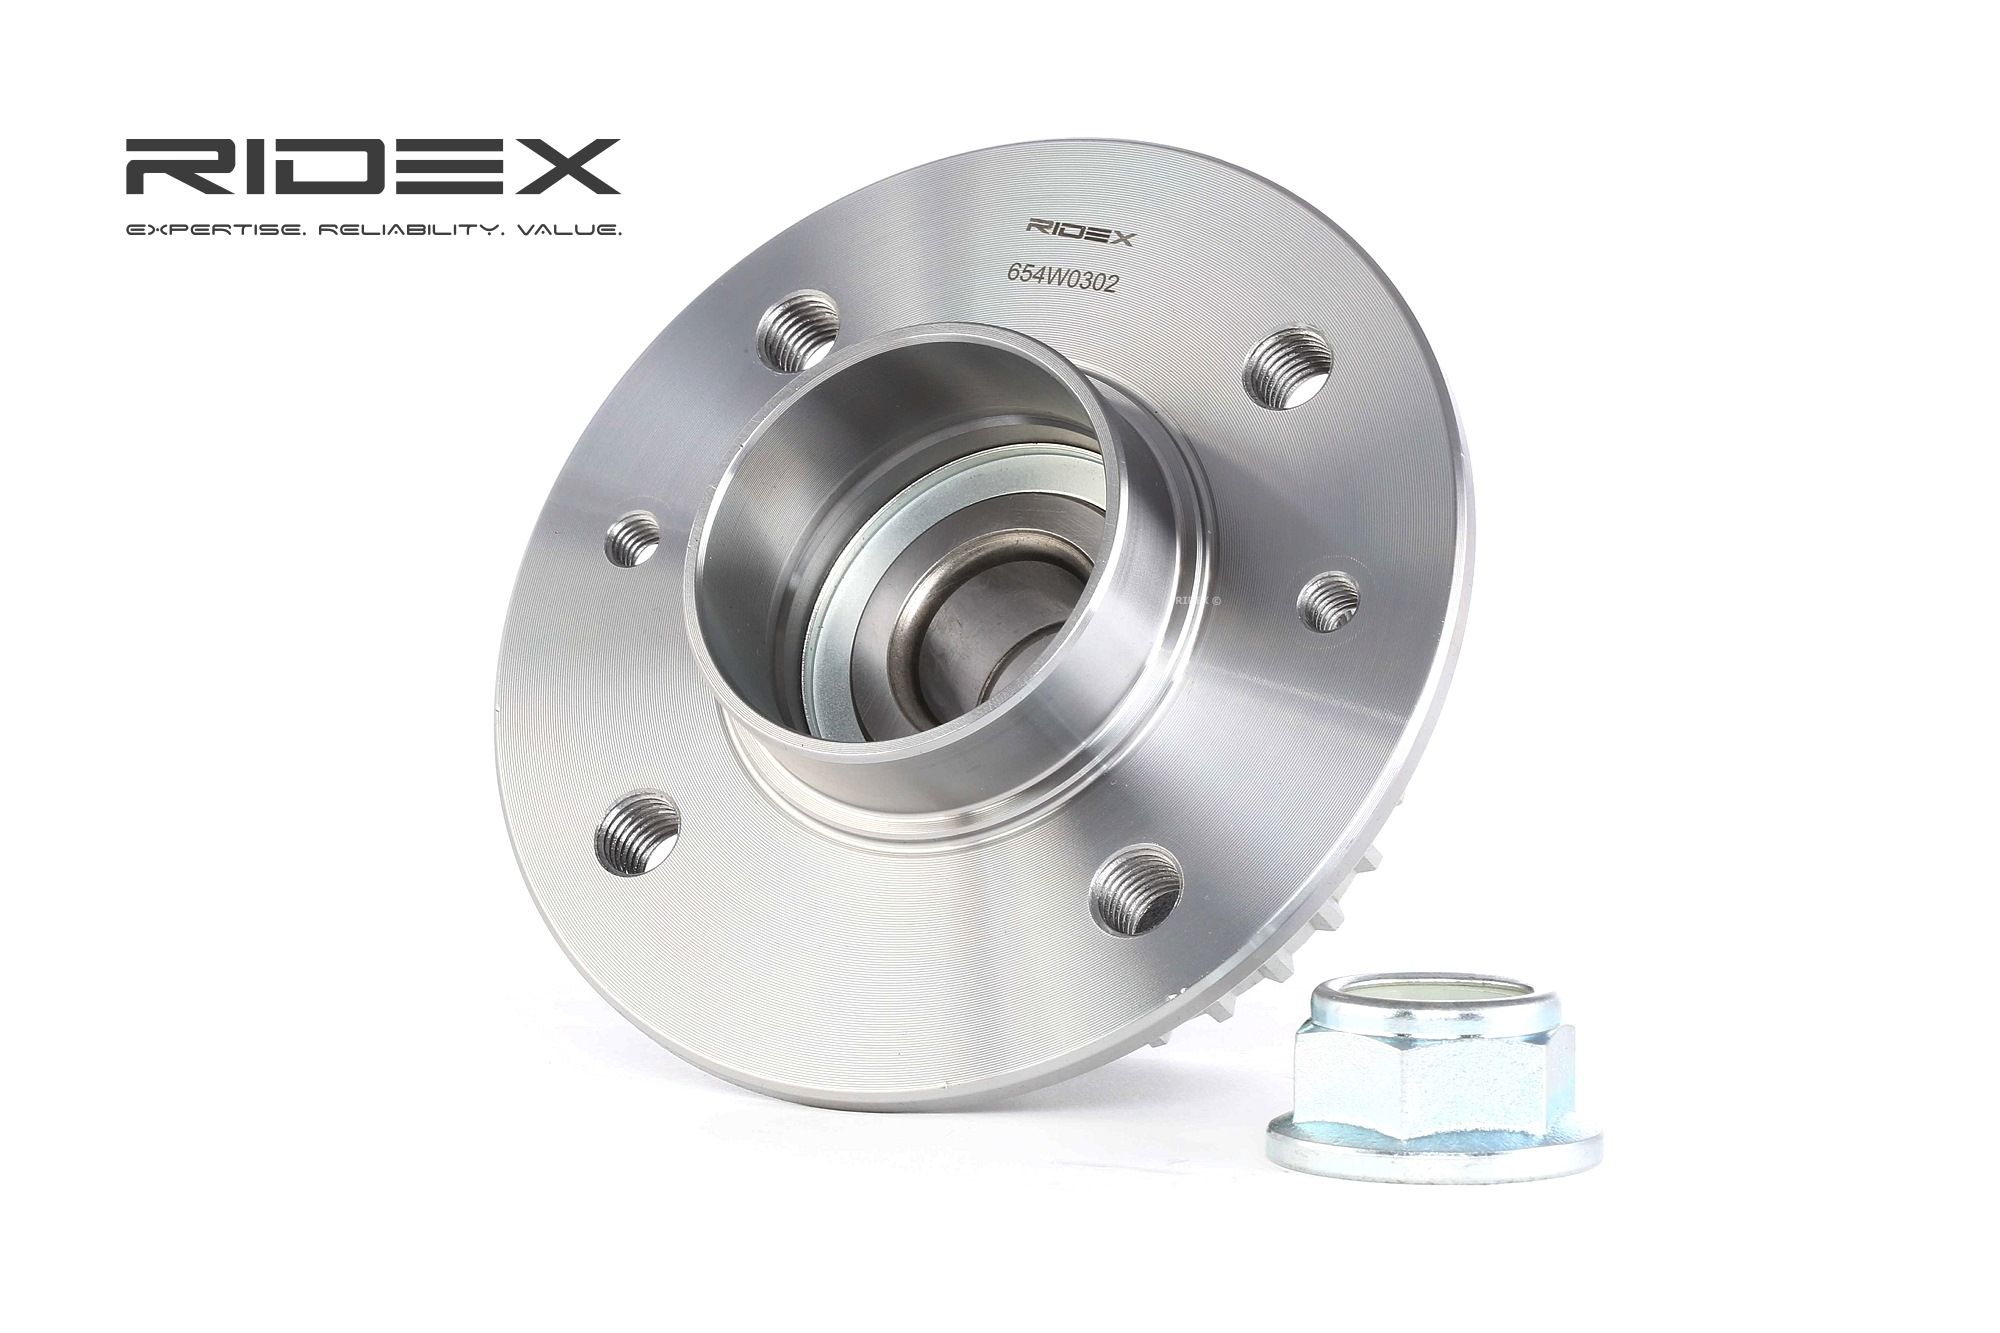 Image of RIDEX Wheel bearing kit RENAULT 654W0302 7701205499 Wheel hub bearing,Wheel bearing,Hub bearing,Axle shaft bearing,Wheel bearing & wheel bearing kit